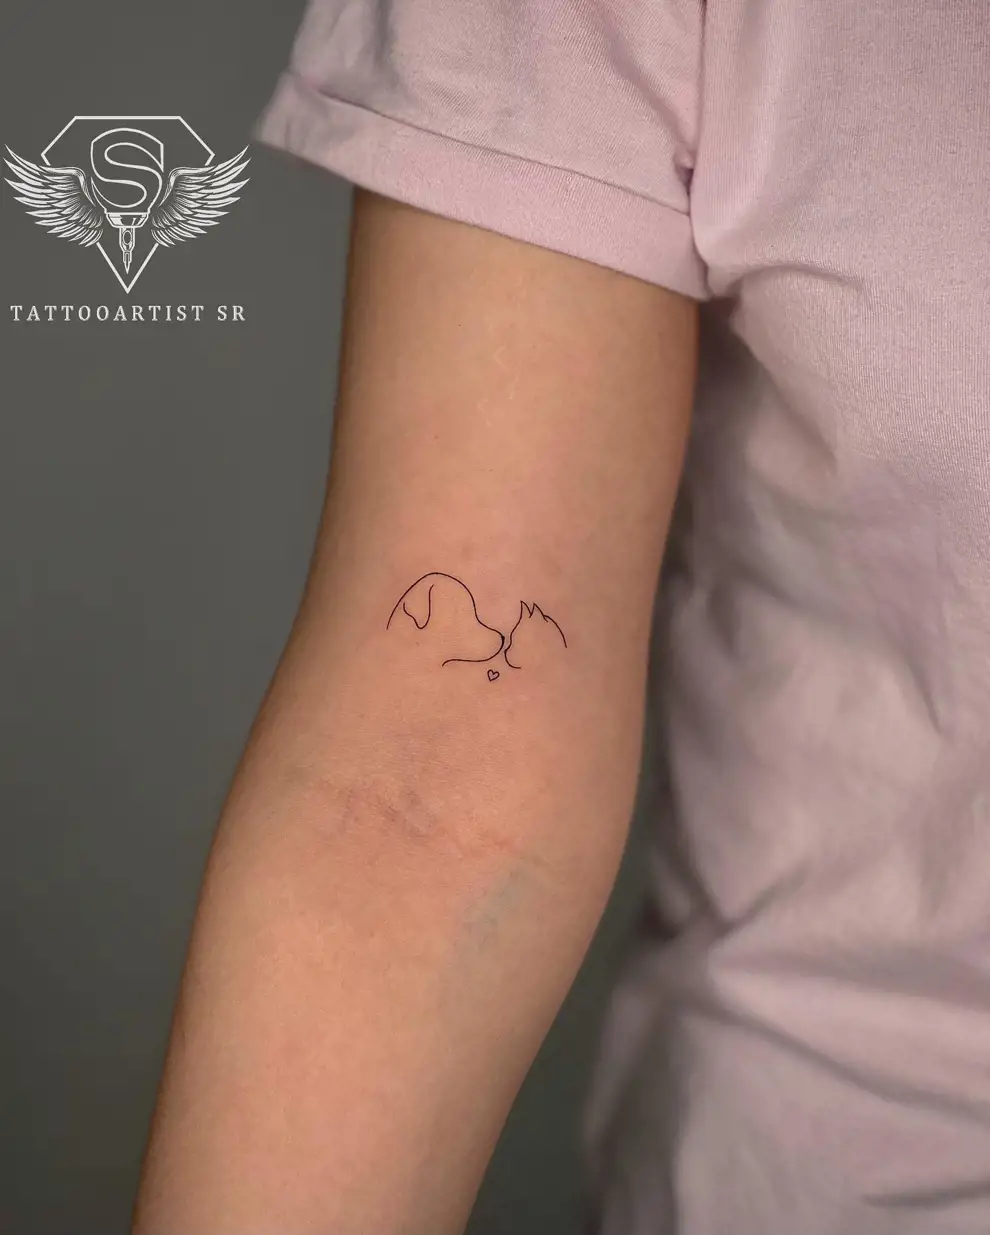 Tatuajes con significado pequeños: ¿amor imposible?